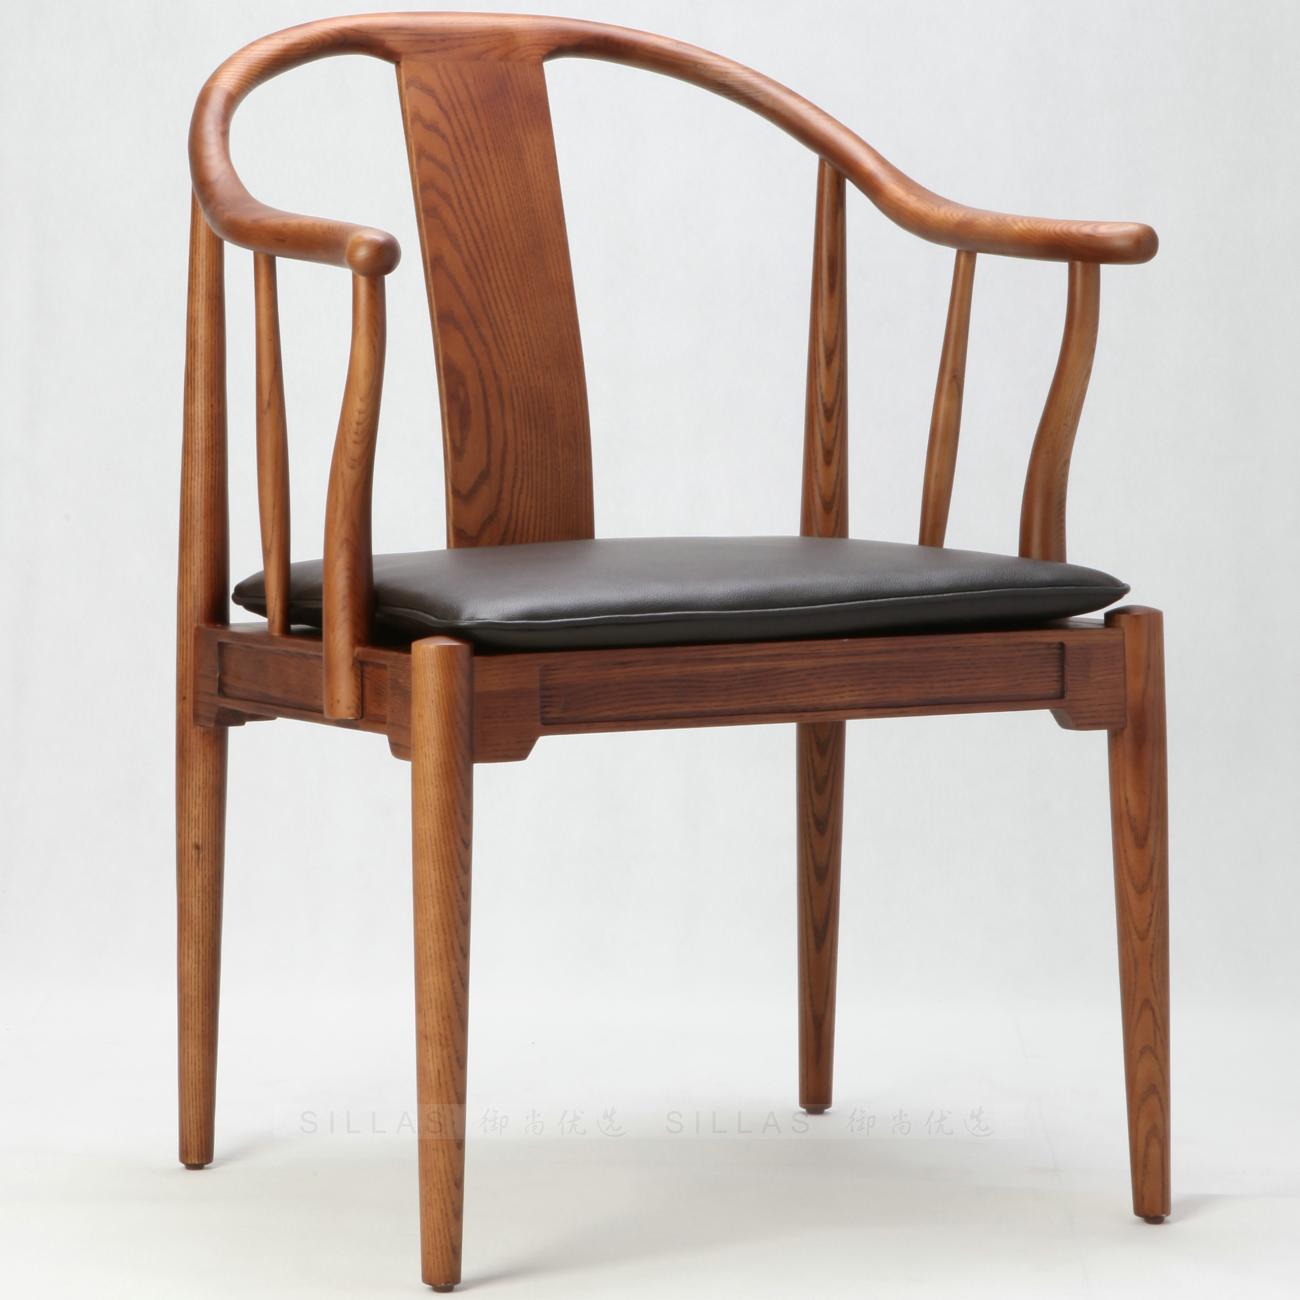 充满艺术感的欧式风情家具——椅子 - 普象网